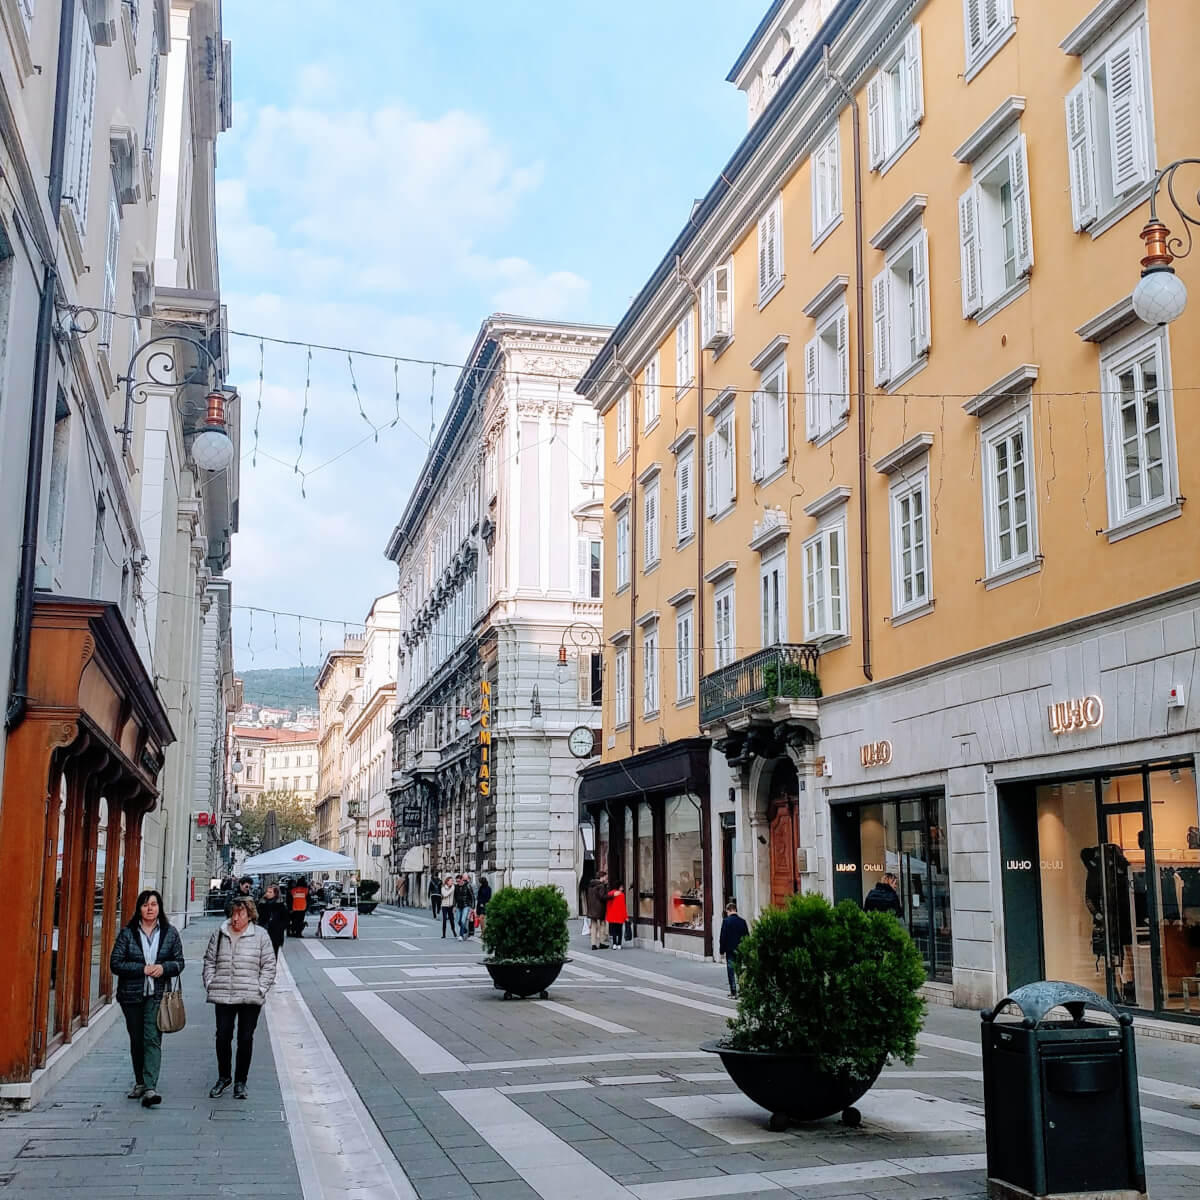 Via San Niccolò, Trieste